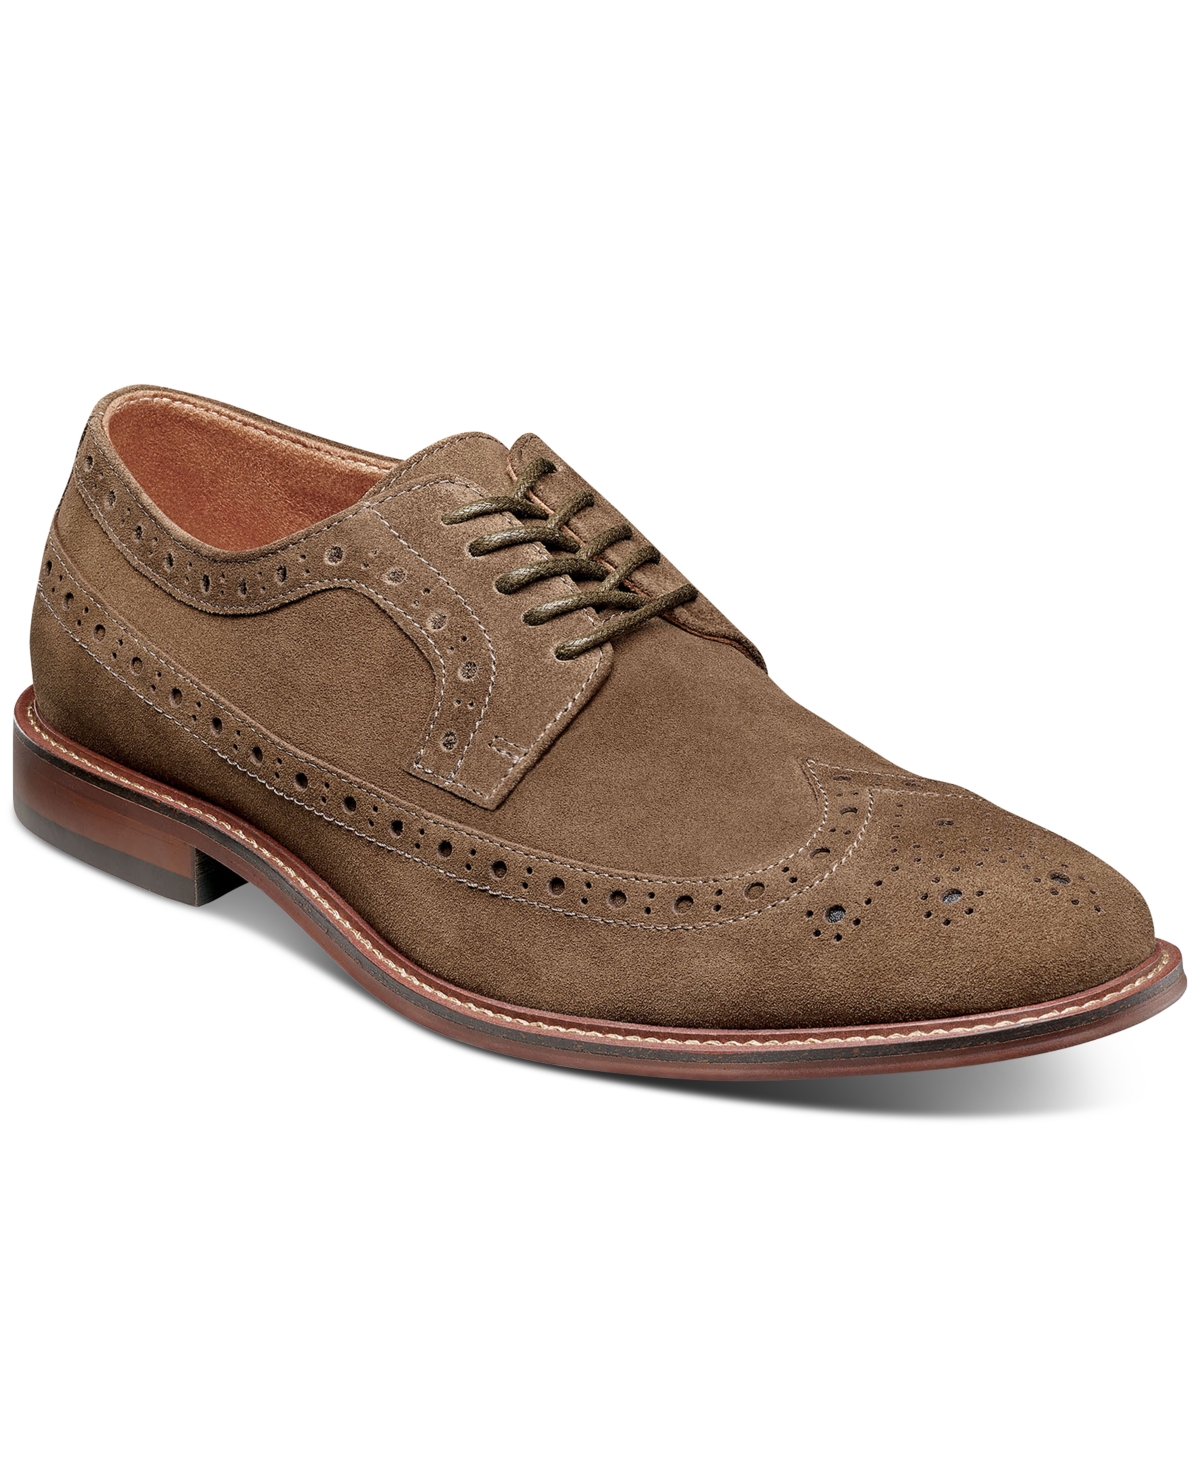 Men's Marligan Wingtip Oxford Shoes - Mocha Suede